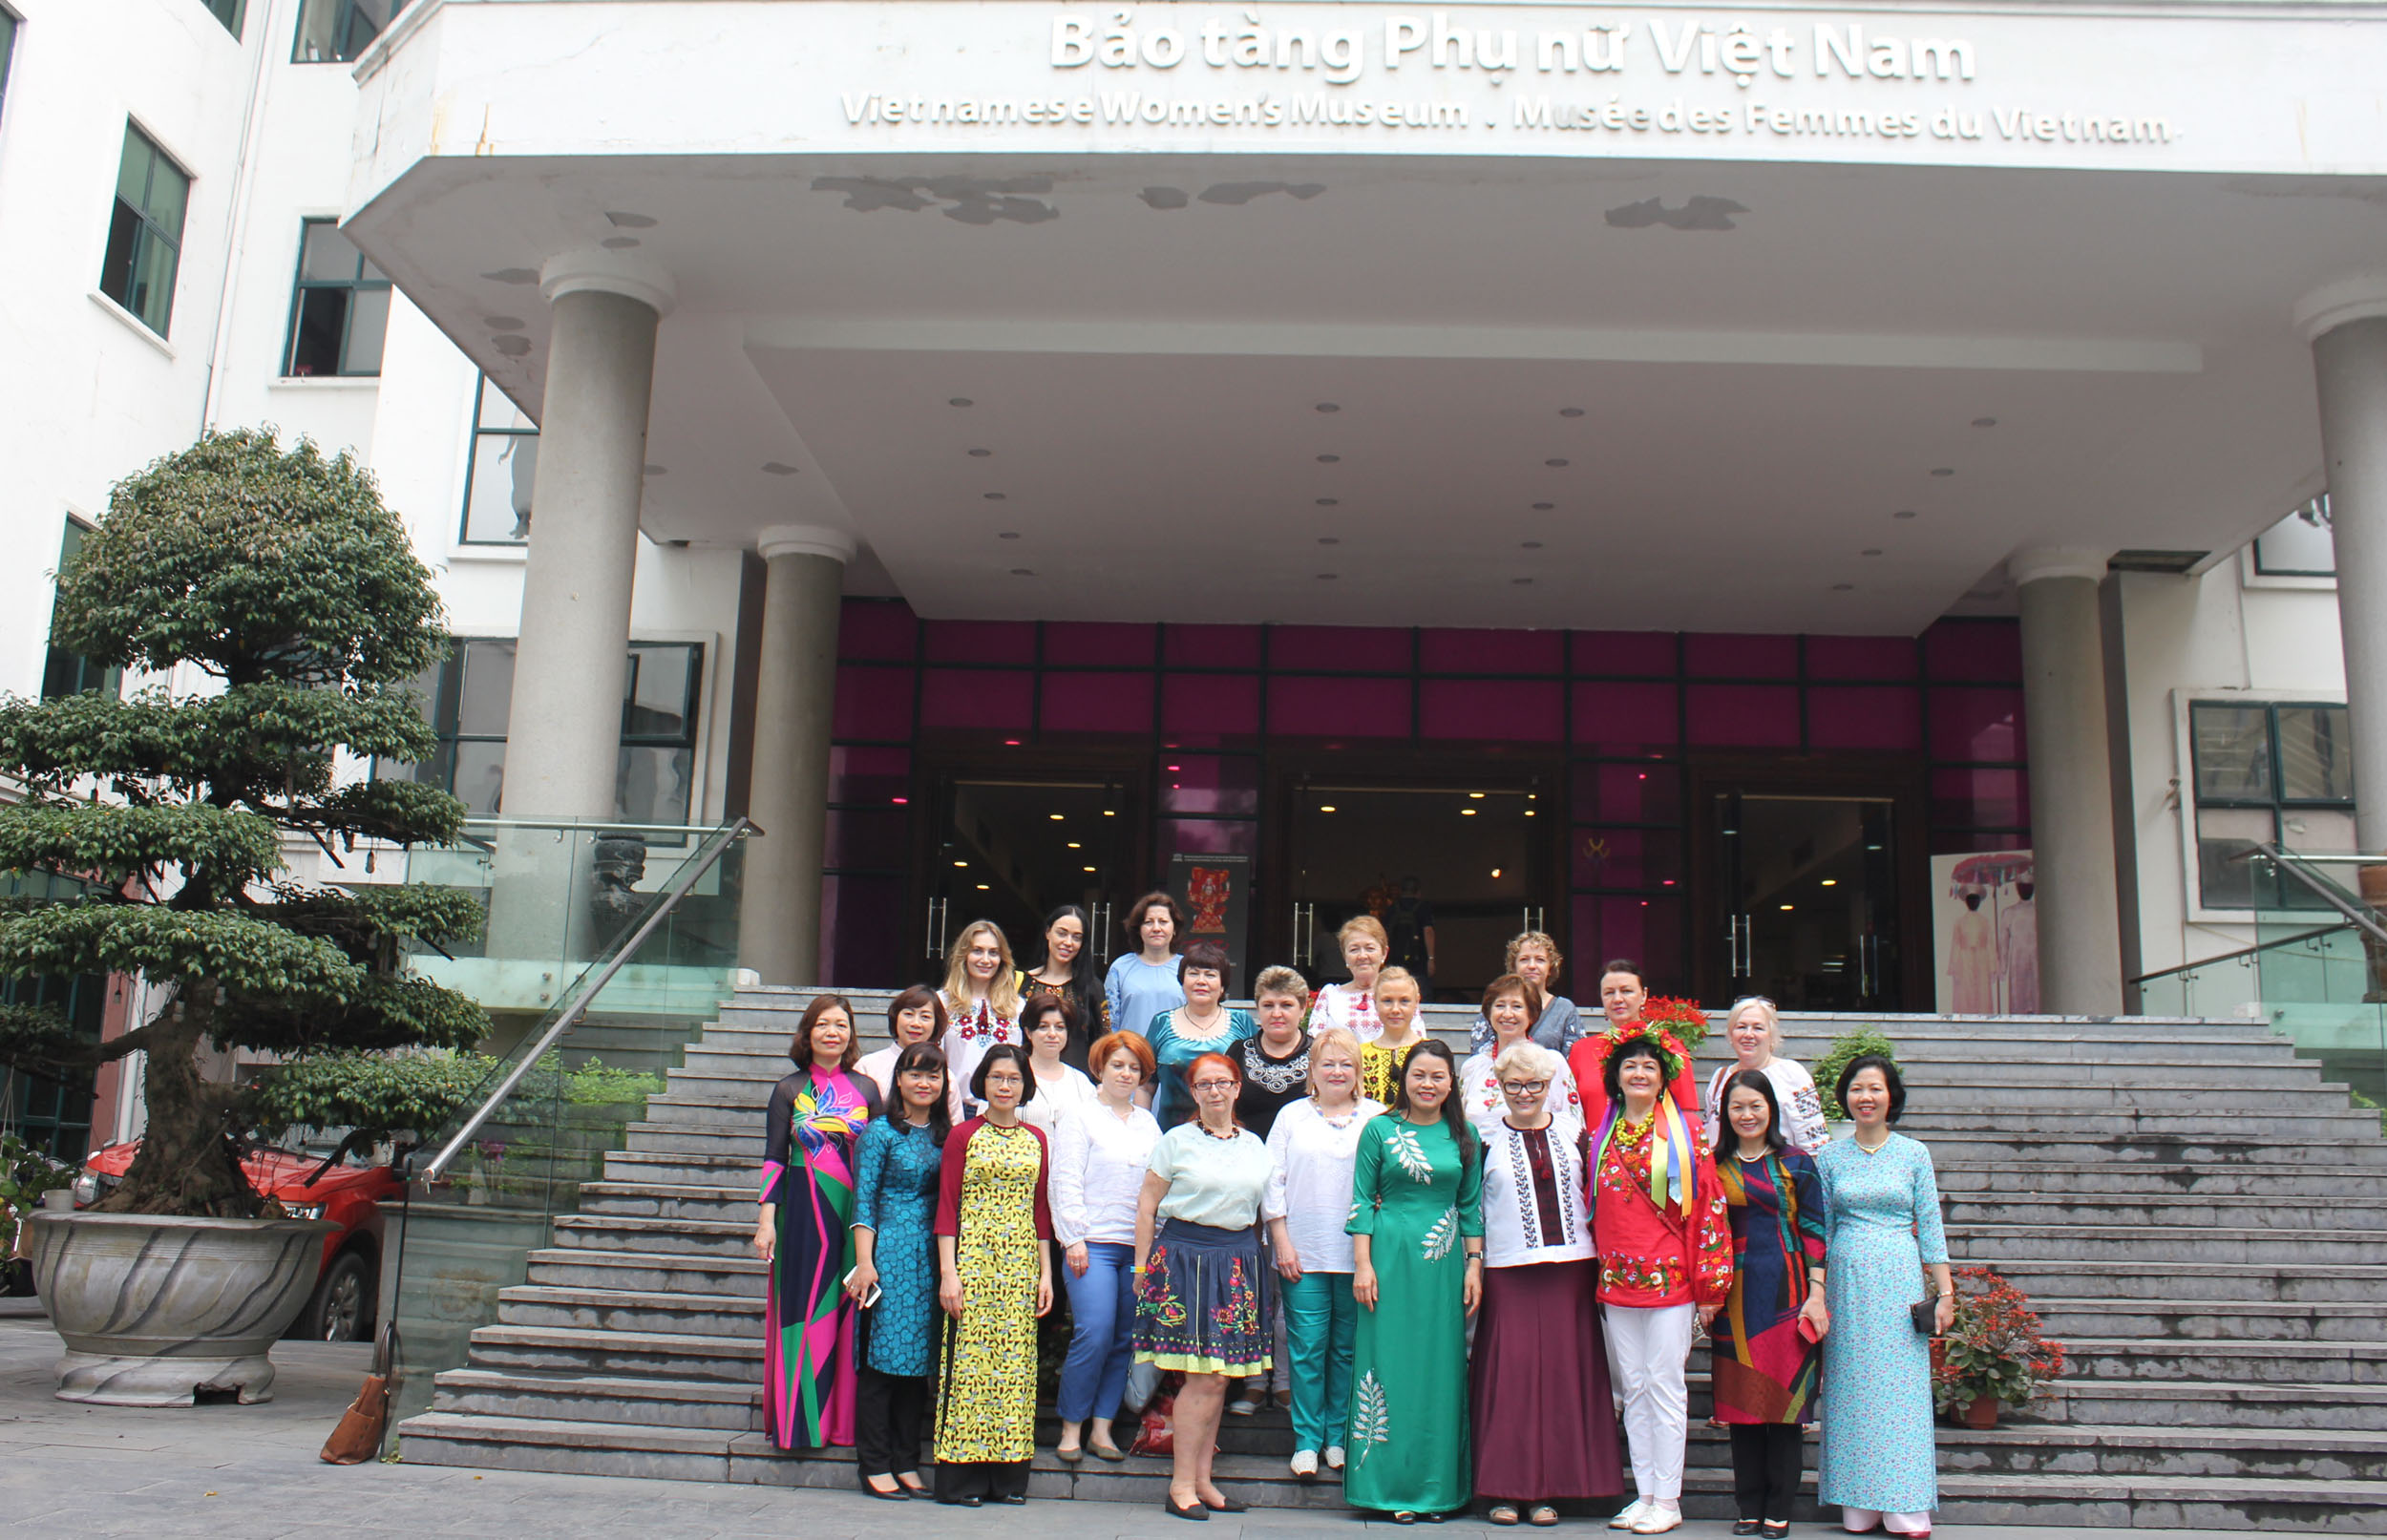 Sau buổi làm việc cùng Chủ tịch Thu Hà, đoàn đại biểu Hội Phụ nữ Ucraina đã tham quan Bảo tàng Phụ nữ Việt Nam. 